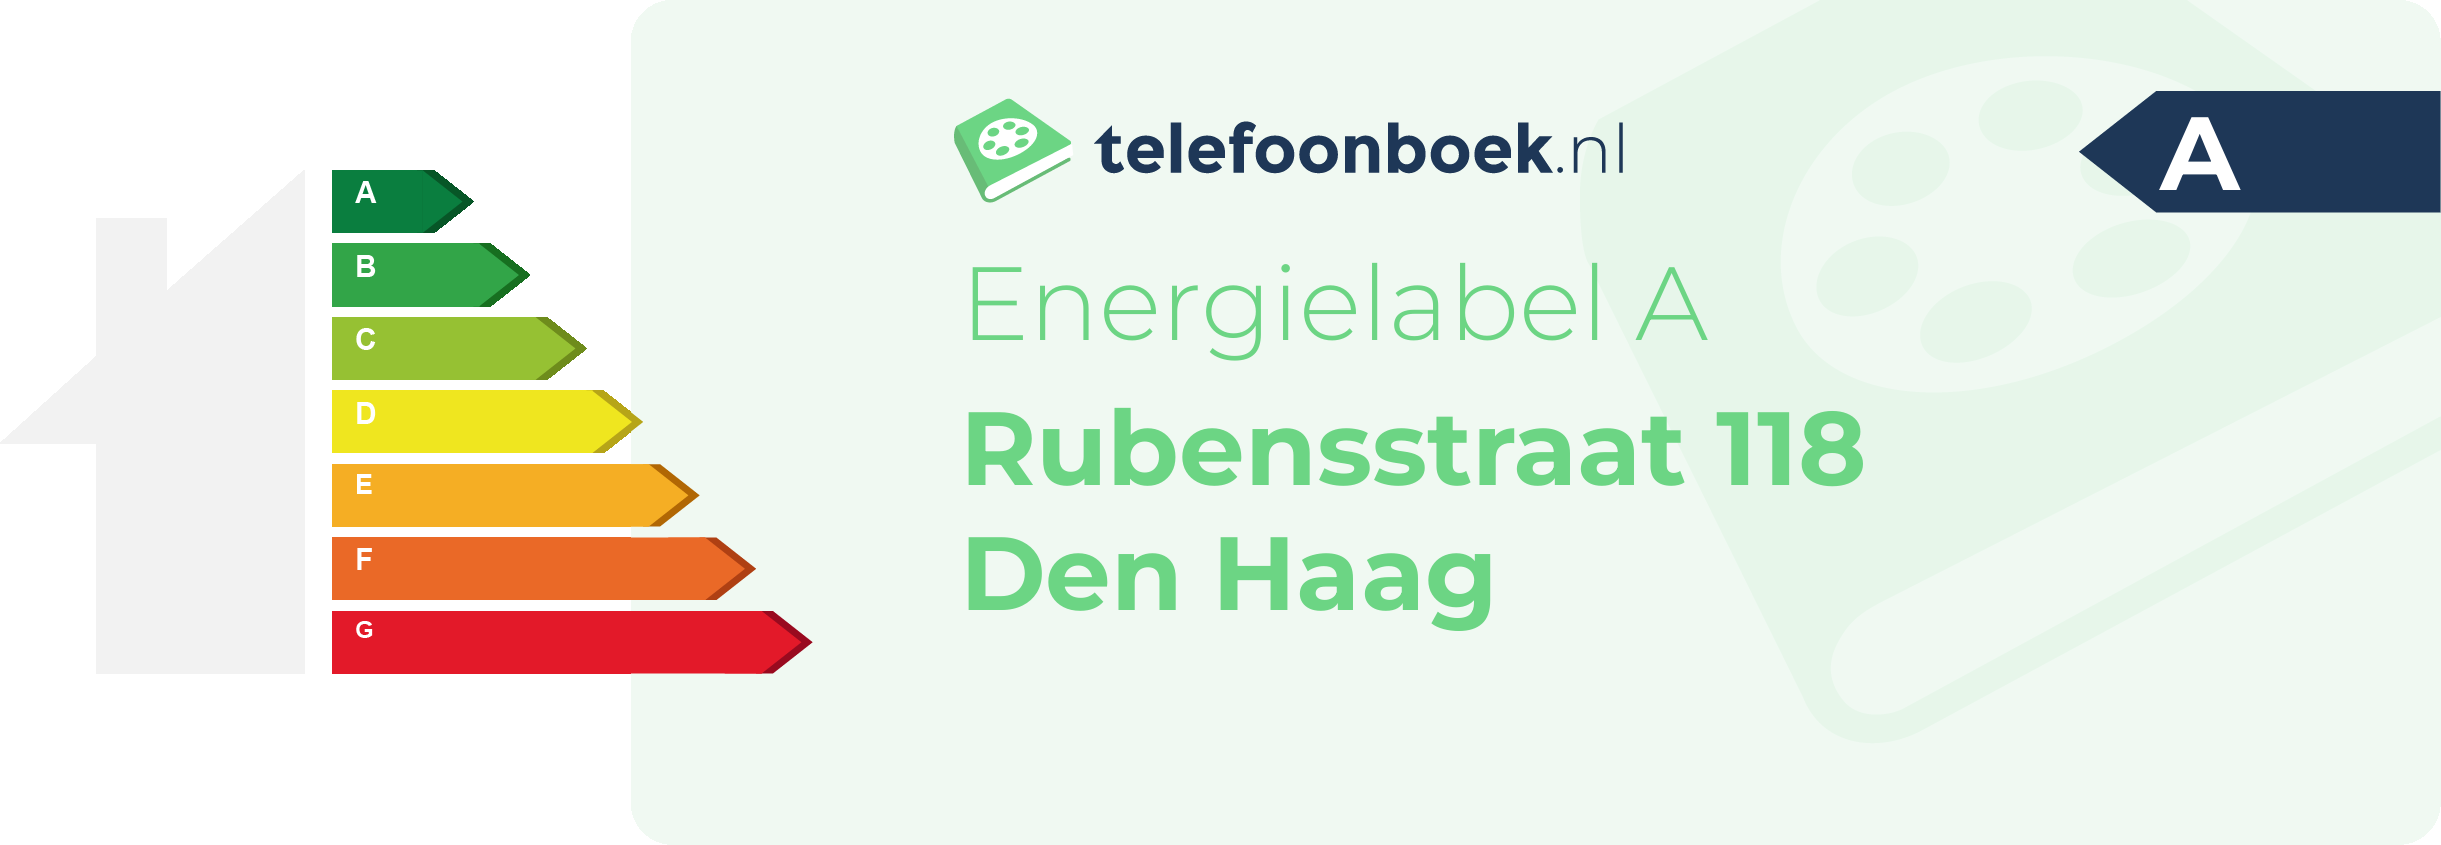 Energielabel Rubensstraat 118 Den Haag